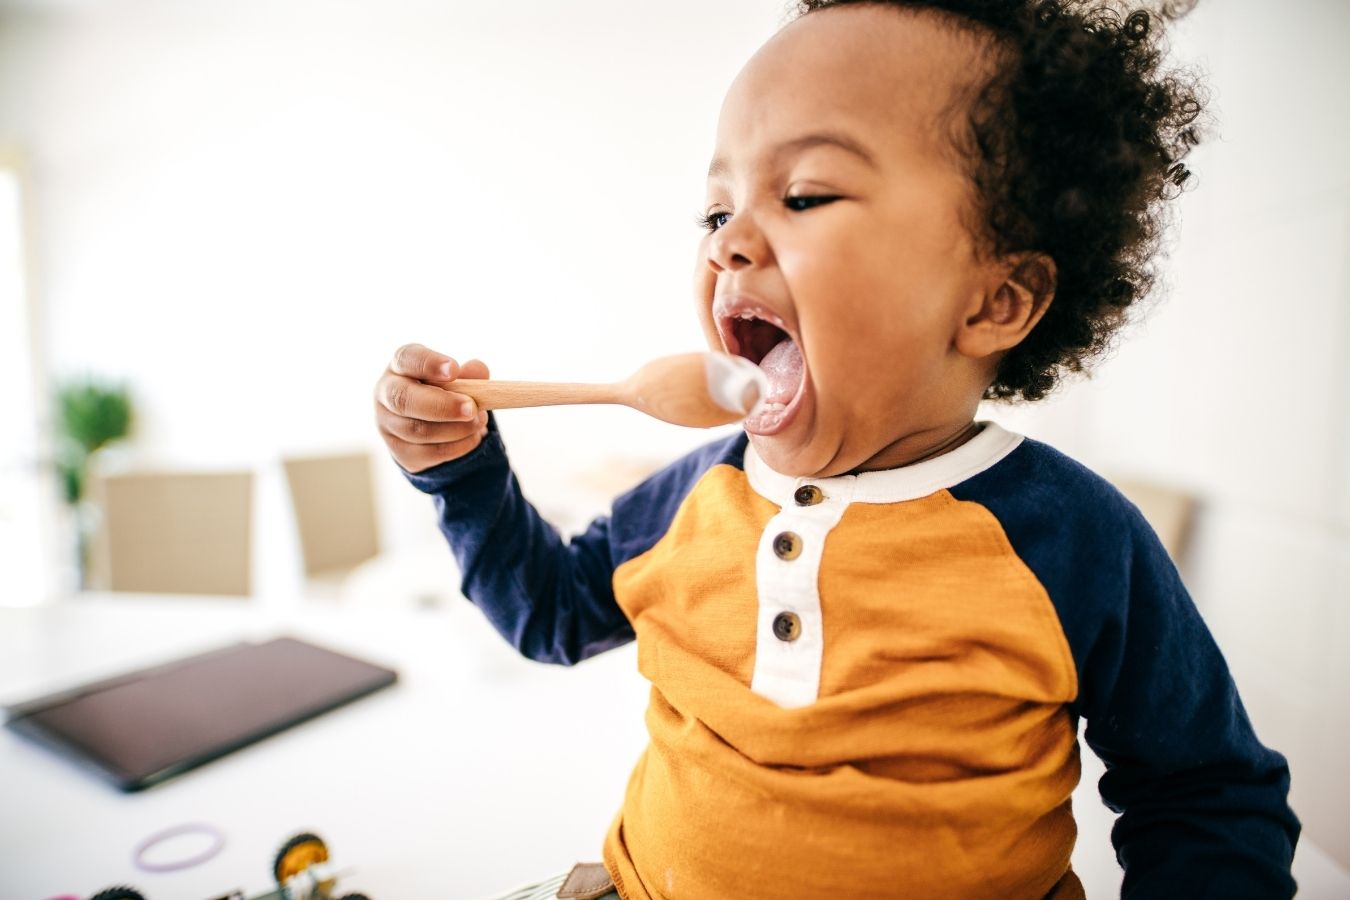 Cucharas y tenedores: Cómo aprenden a usarlos los niños pequeños -  BabySparks